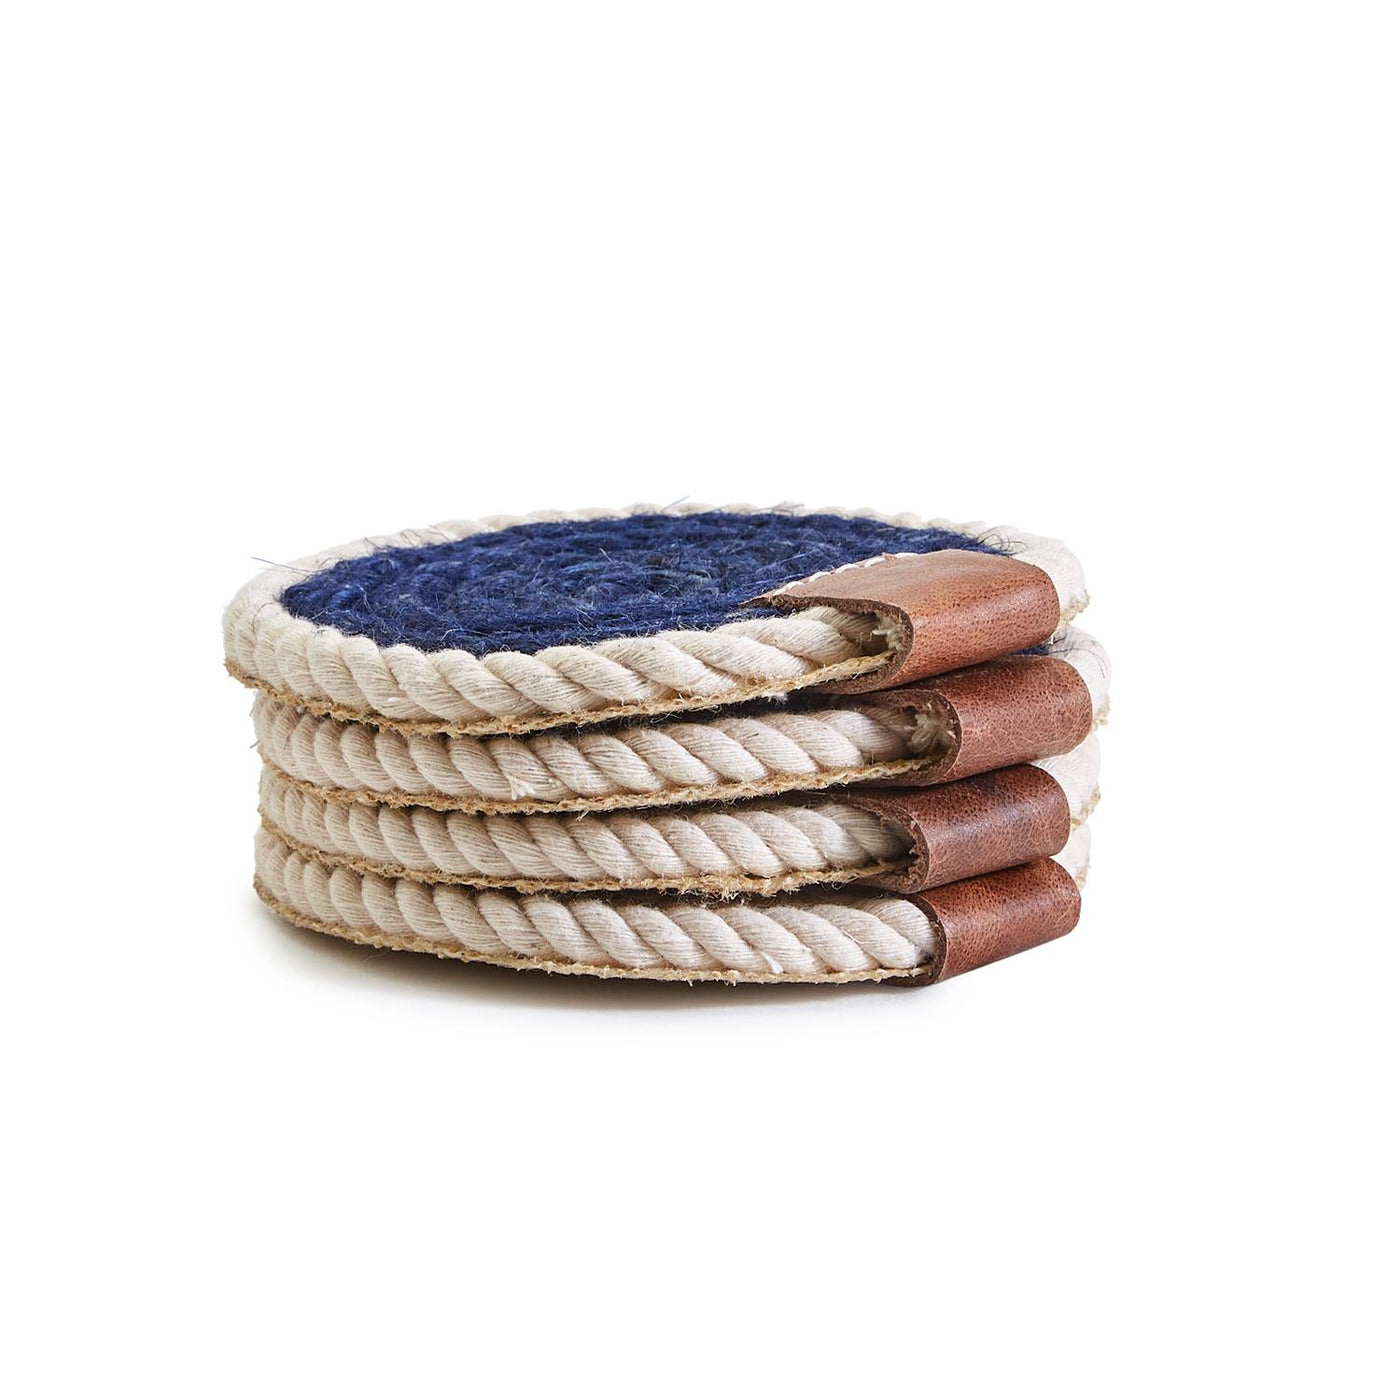 Ocean Blue Rope Coasters - Set of 4